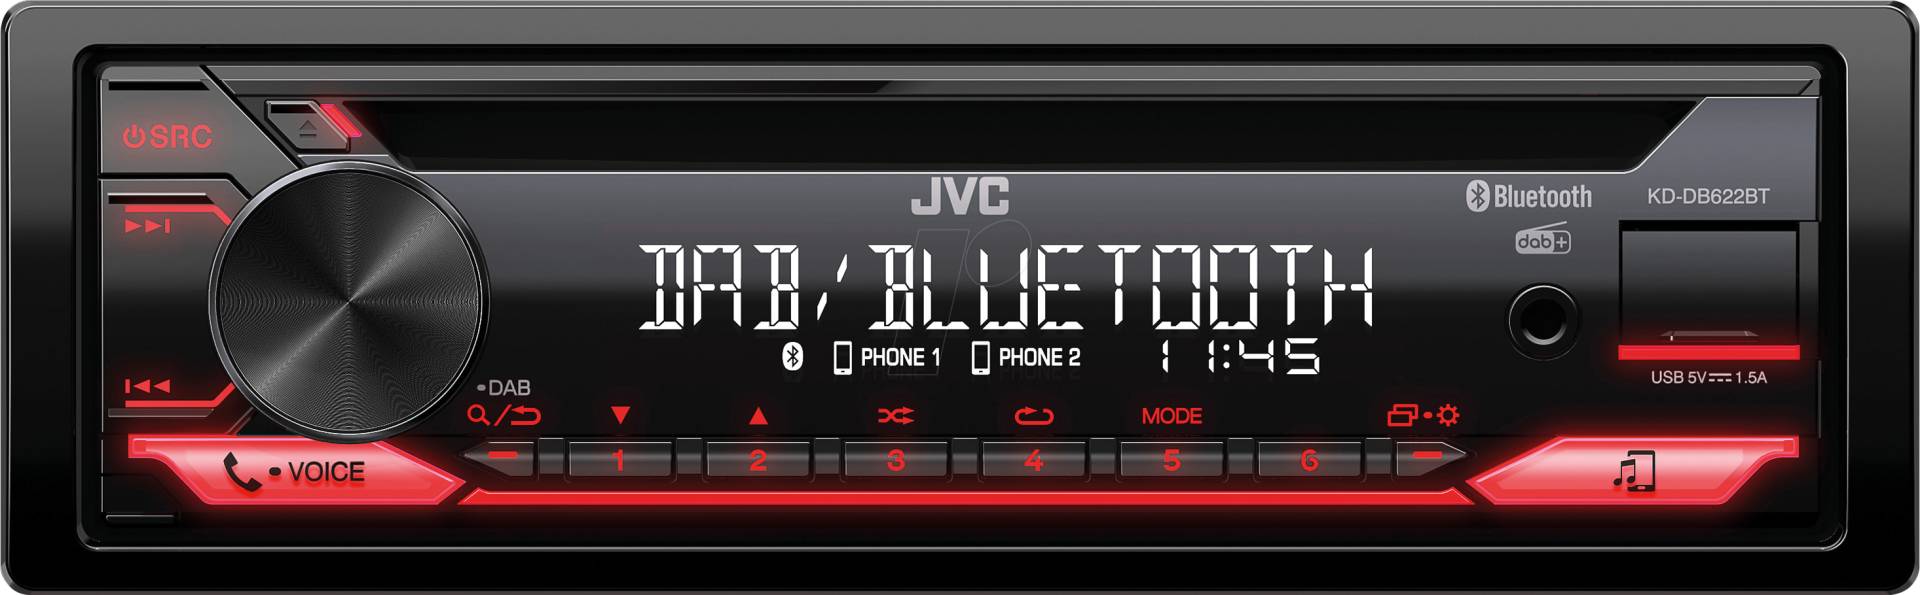 JVC KD-DB622BT - Autoradio, CD, DAB+, BT, USB, 50 W von JVC